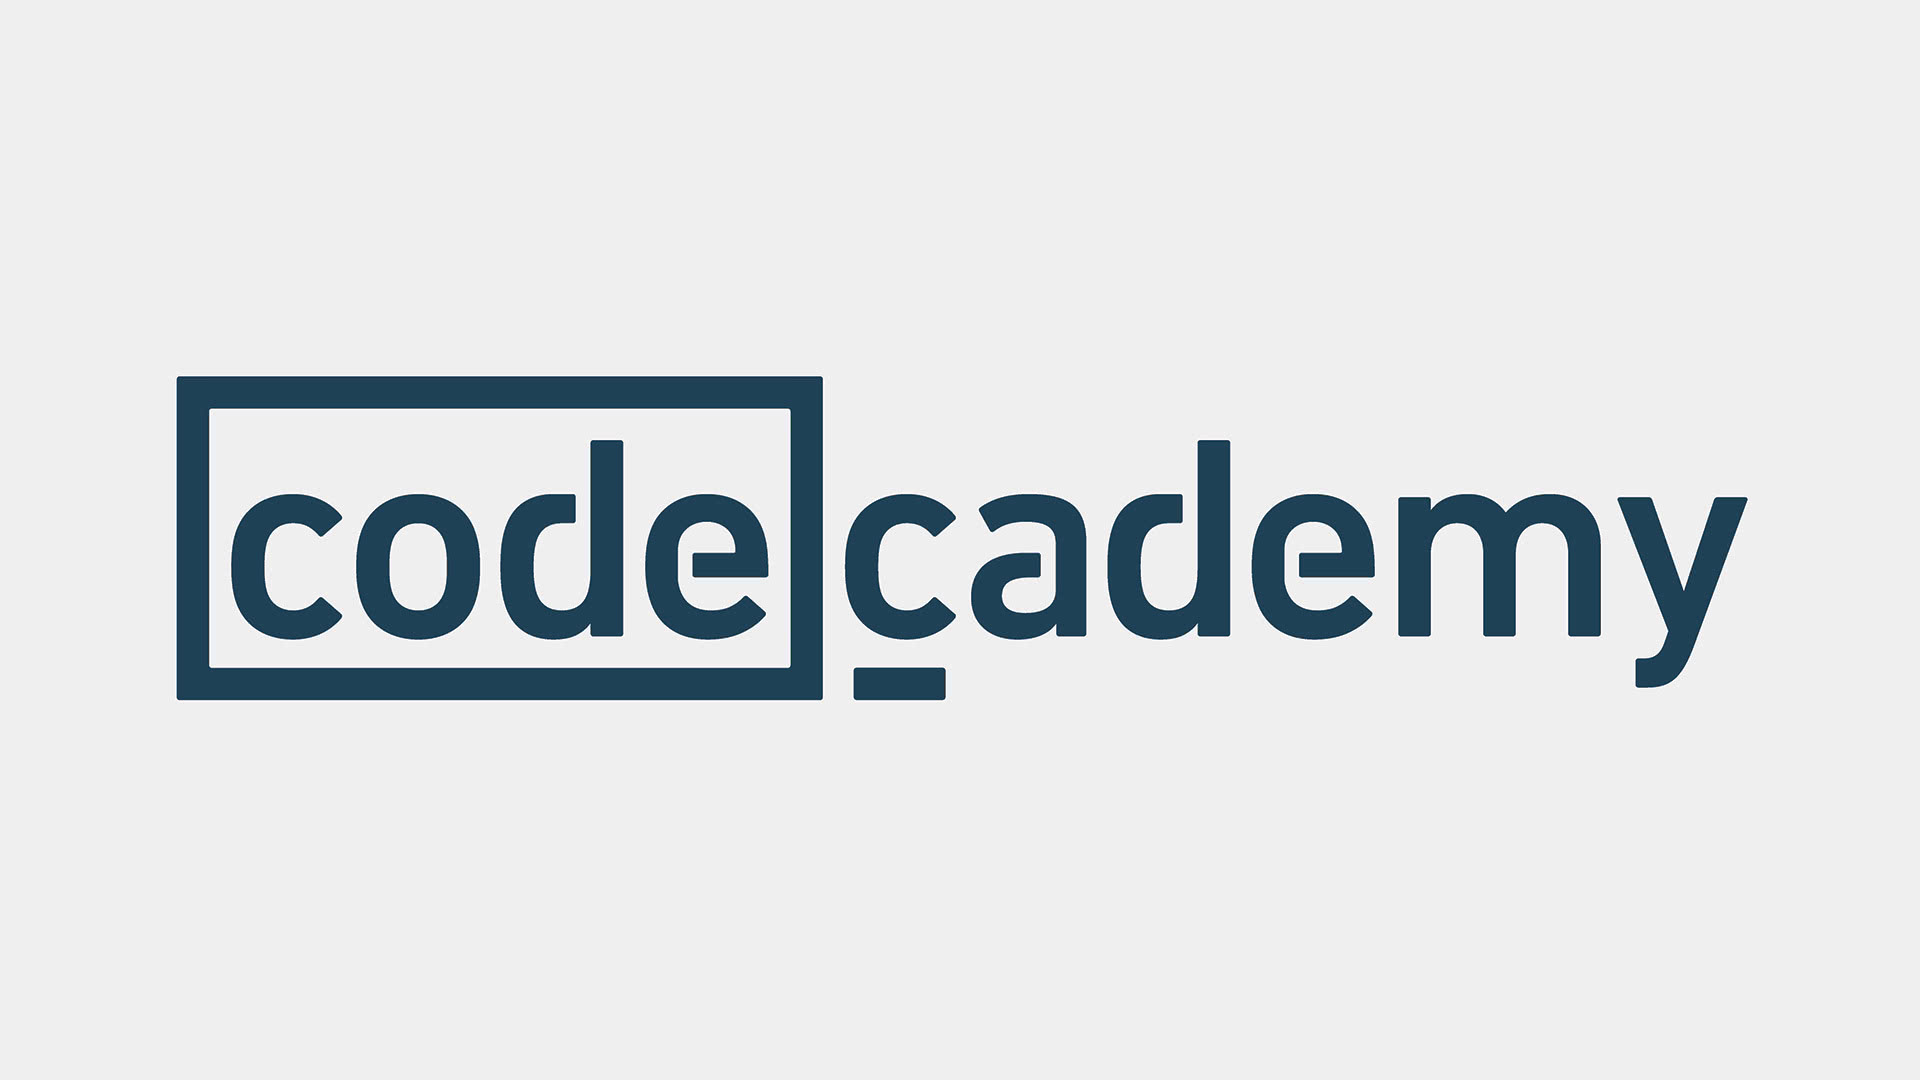 Codecademy - Wikipedia